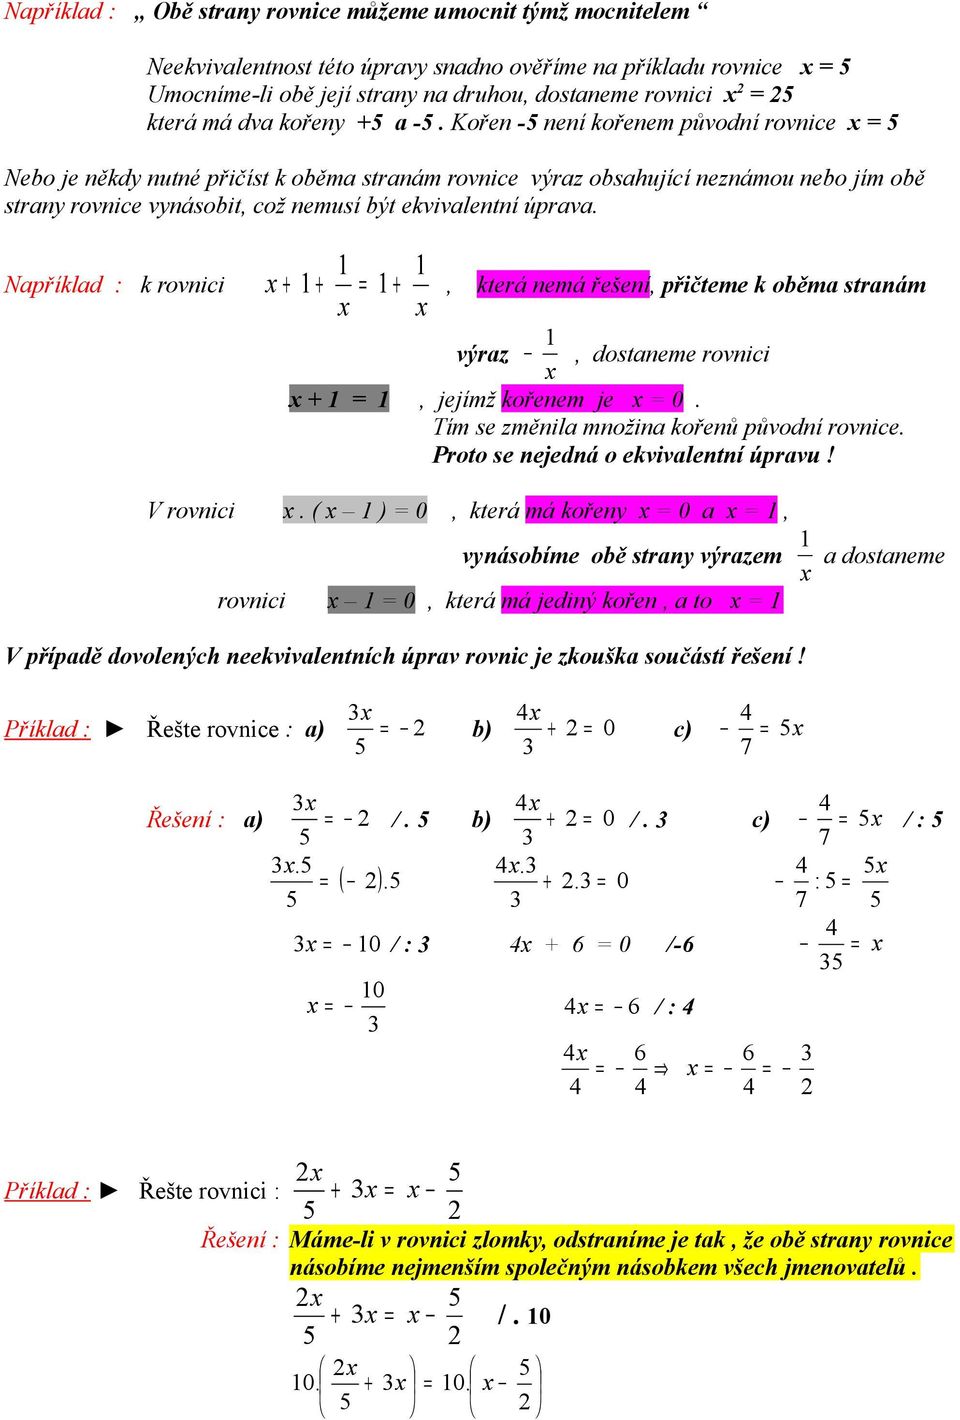 Kořen - není kořenem původní rovnice Nebo je někdy nutné přičíst k oběma stranám rovnice výraz obsahující neznámou nebo jím obě strany rovnice vynásobit, což nemusí být ekvivalentní úprava.